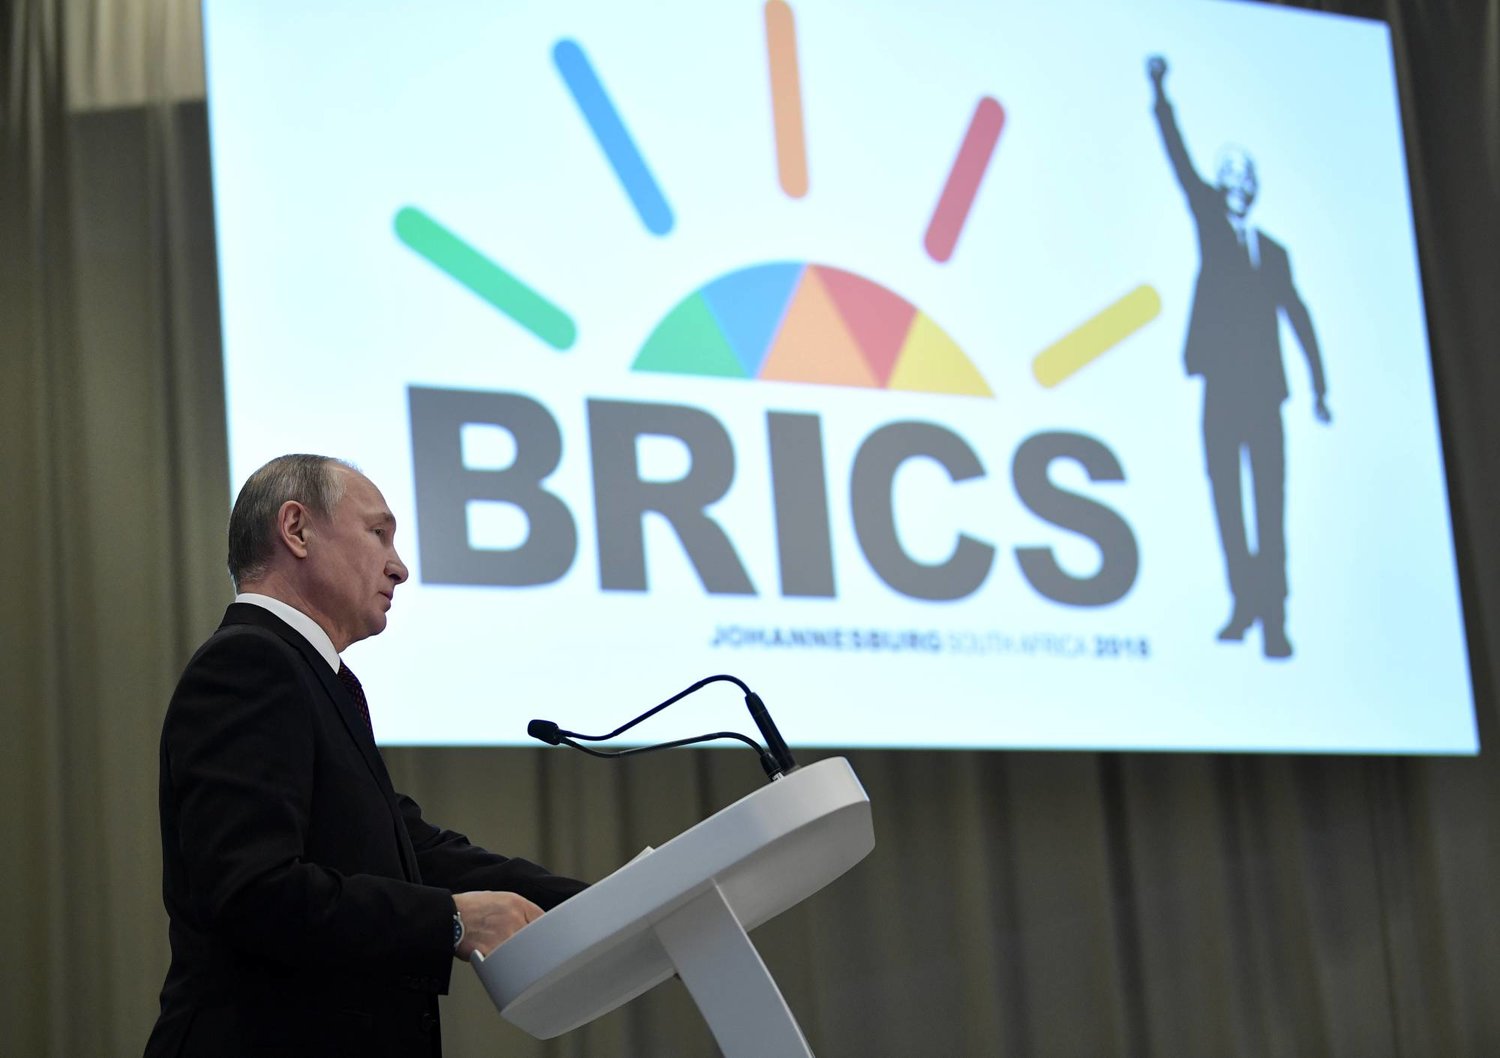 جنوب أفريقيا وجهت دعوة للرئيس الروسي فلاديمير بوتين للمشاركة في قمة «بريكس» (رويترز)